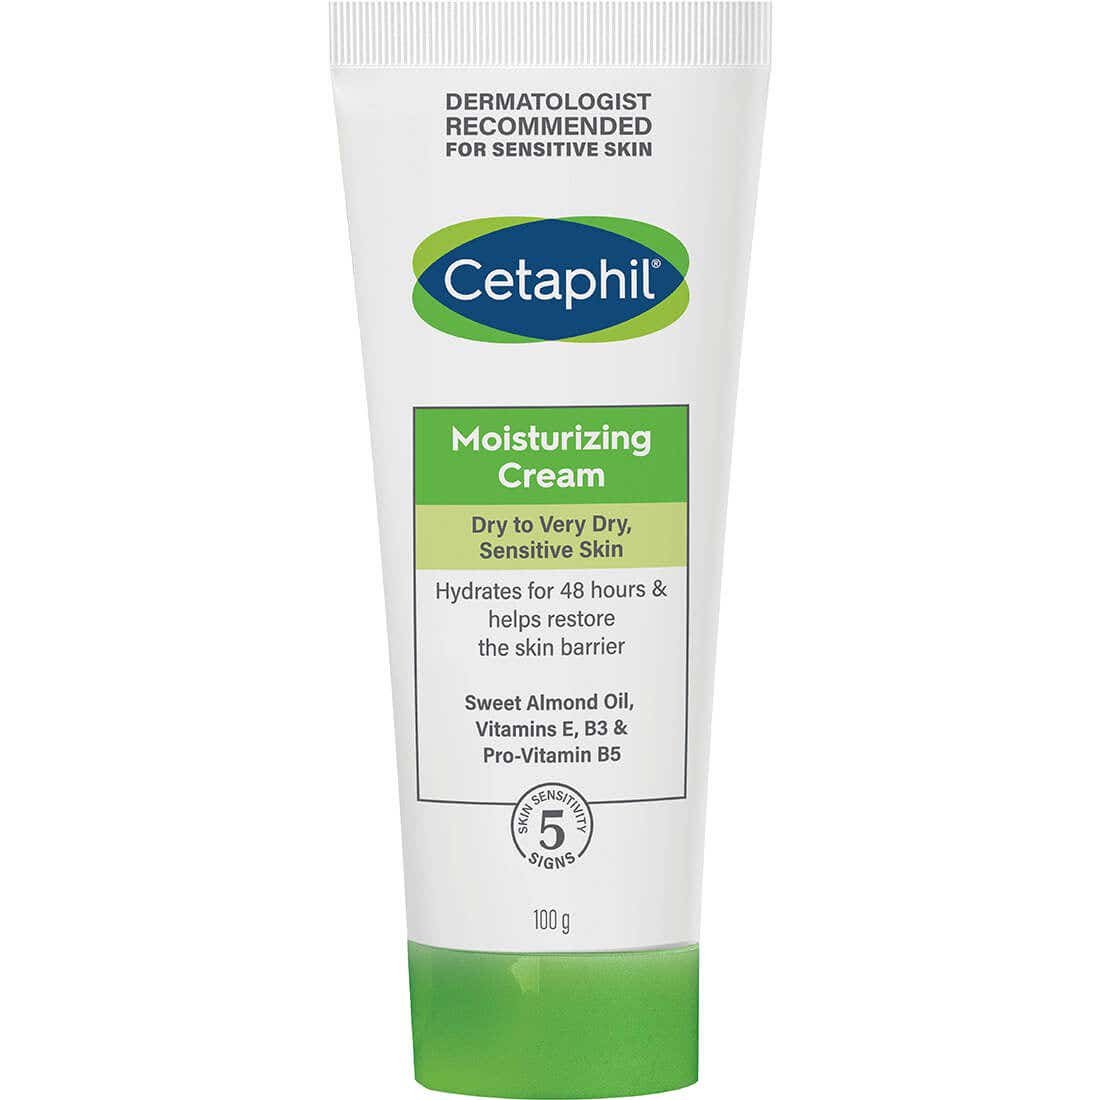 Cetaphil Moisturizing Cream 453 g